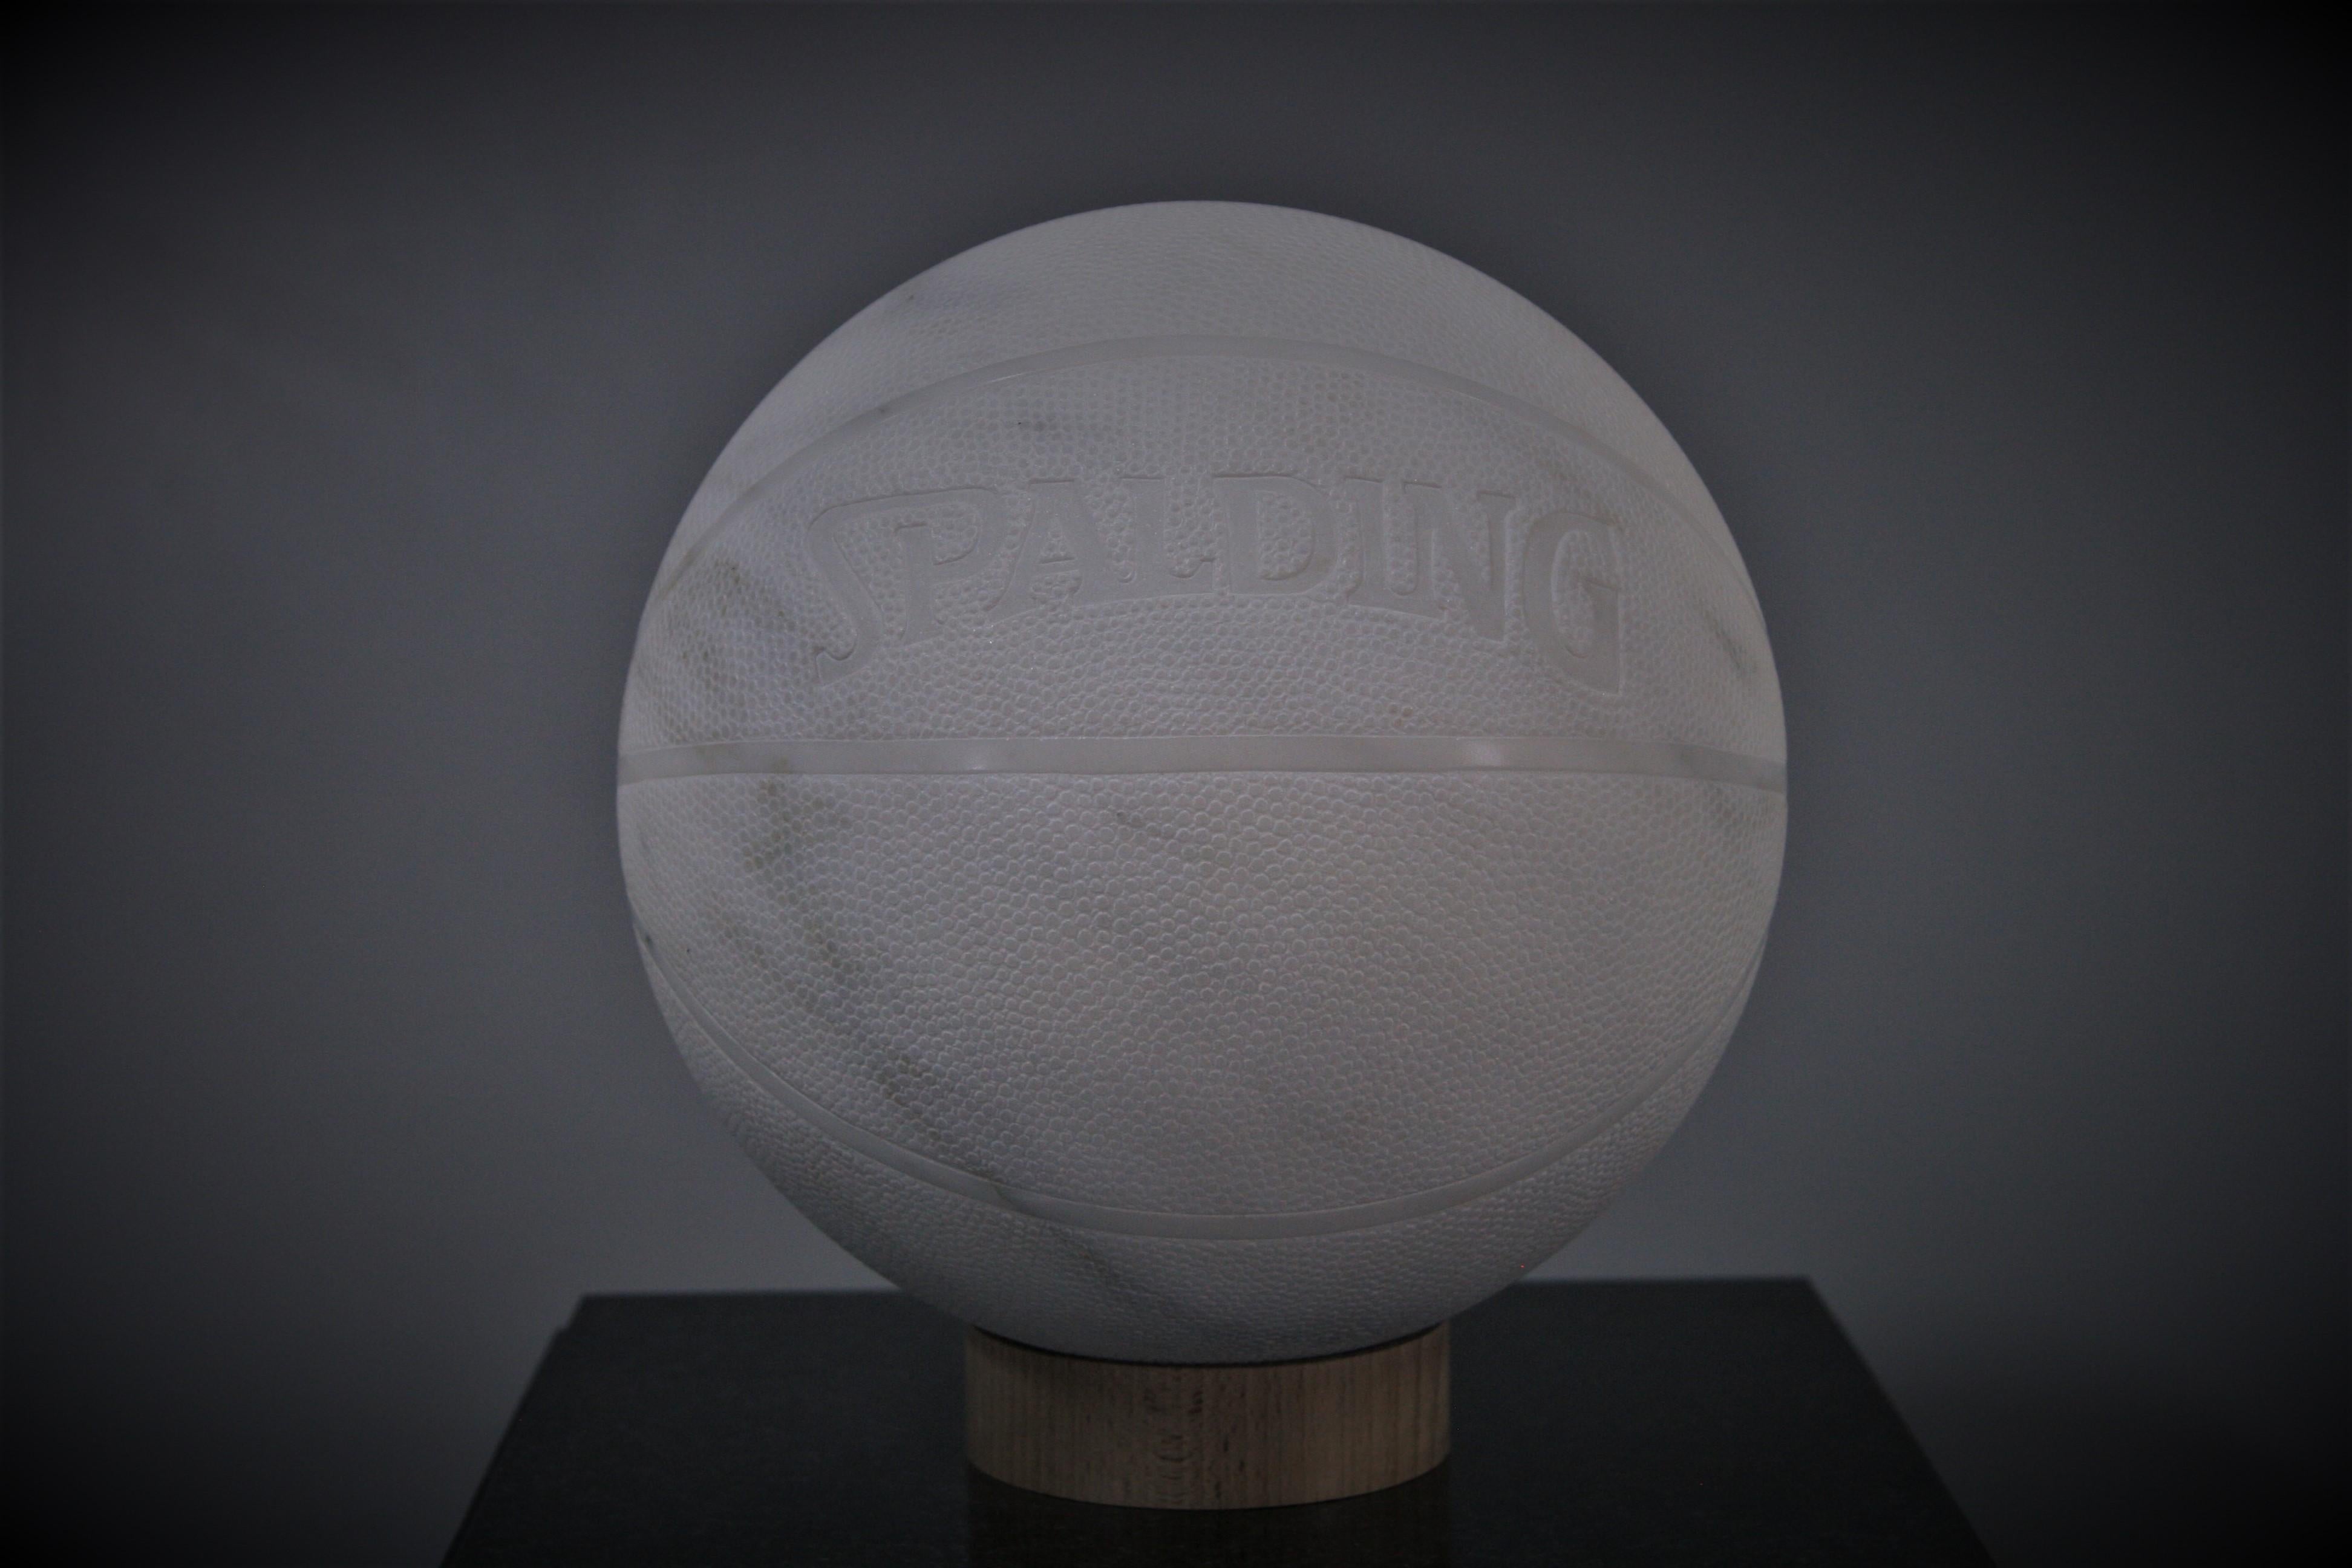 John Bizas Figurative Sculpture - “Basket Ball” - Marble sculpture